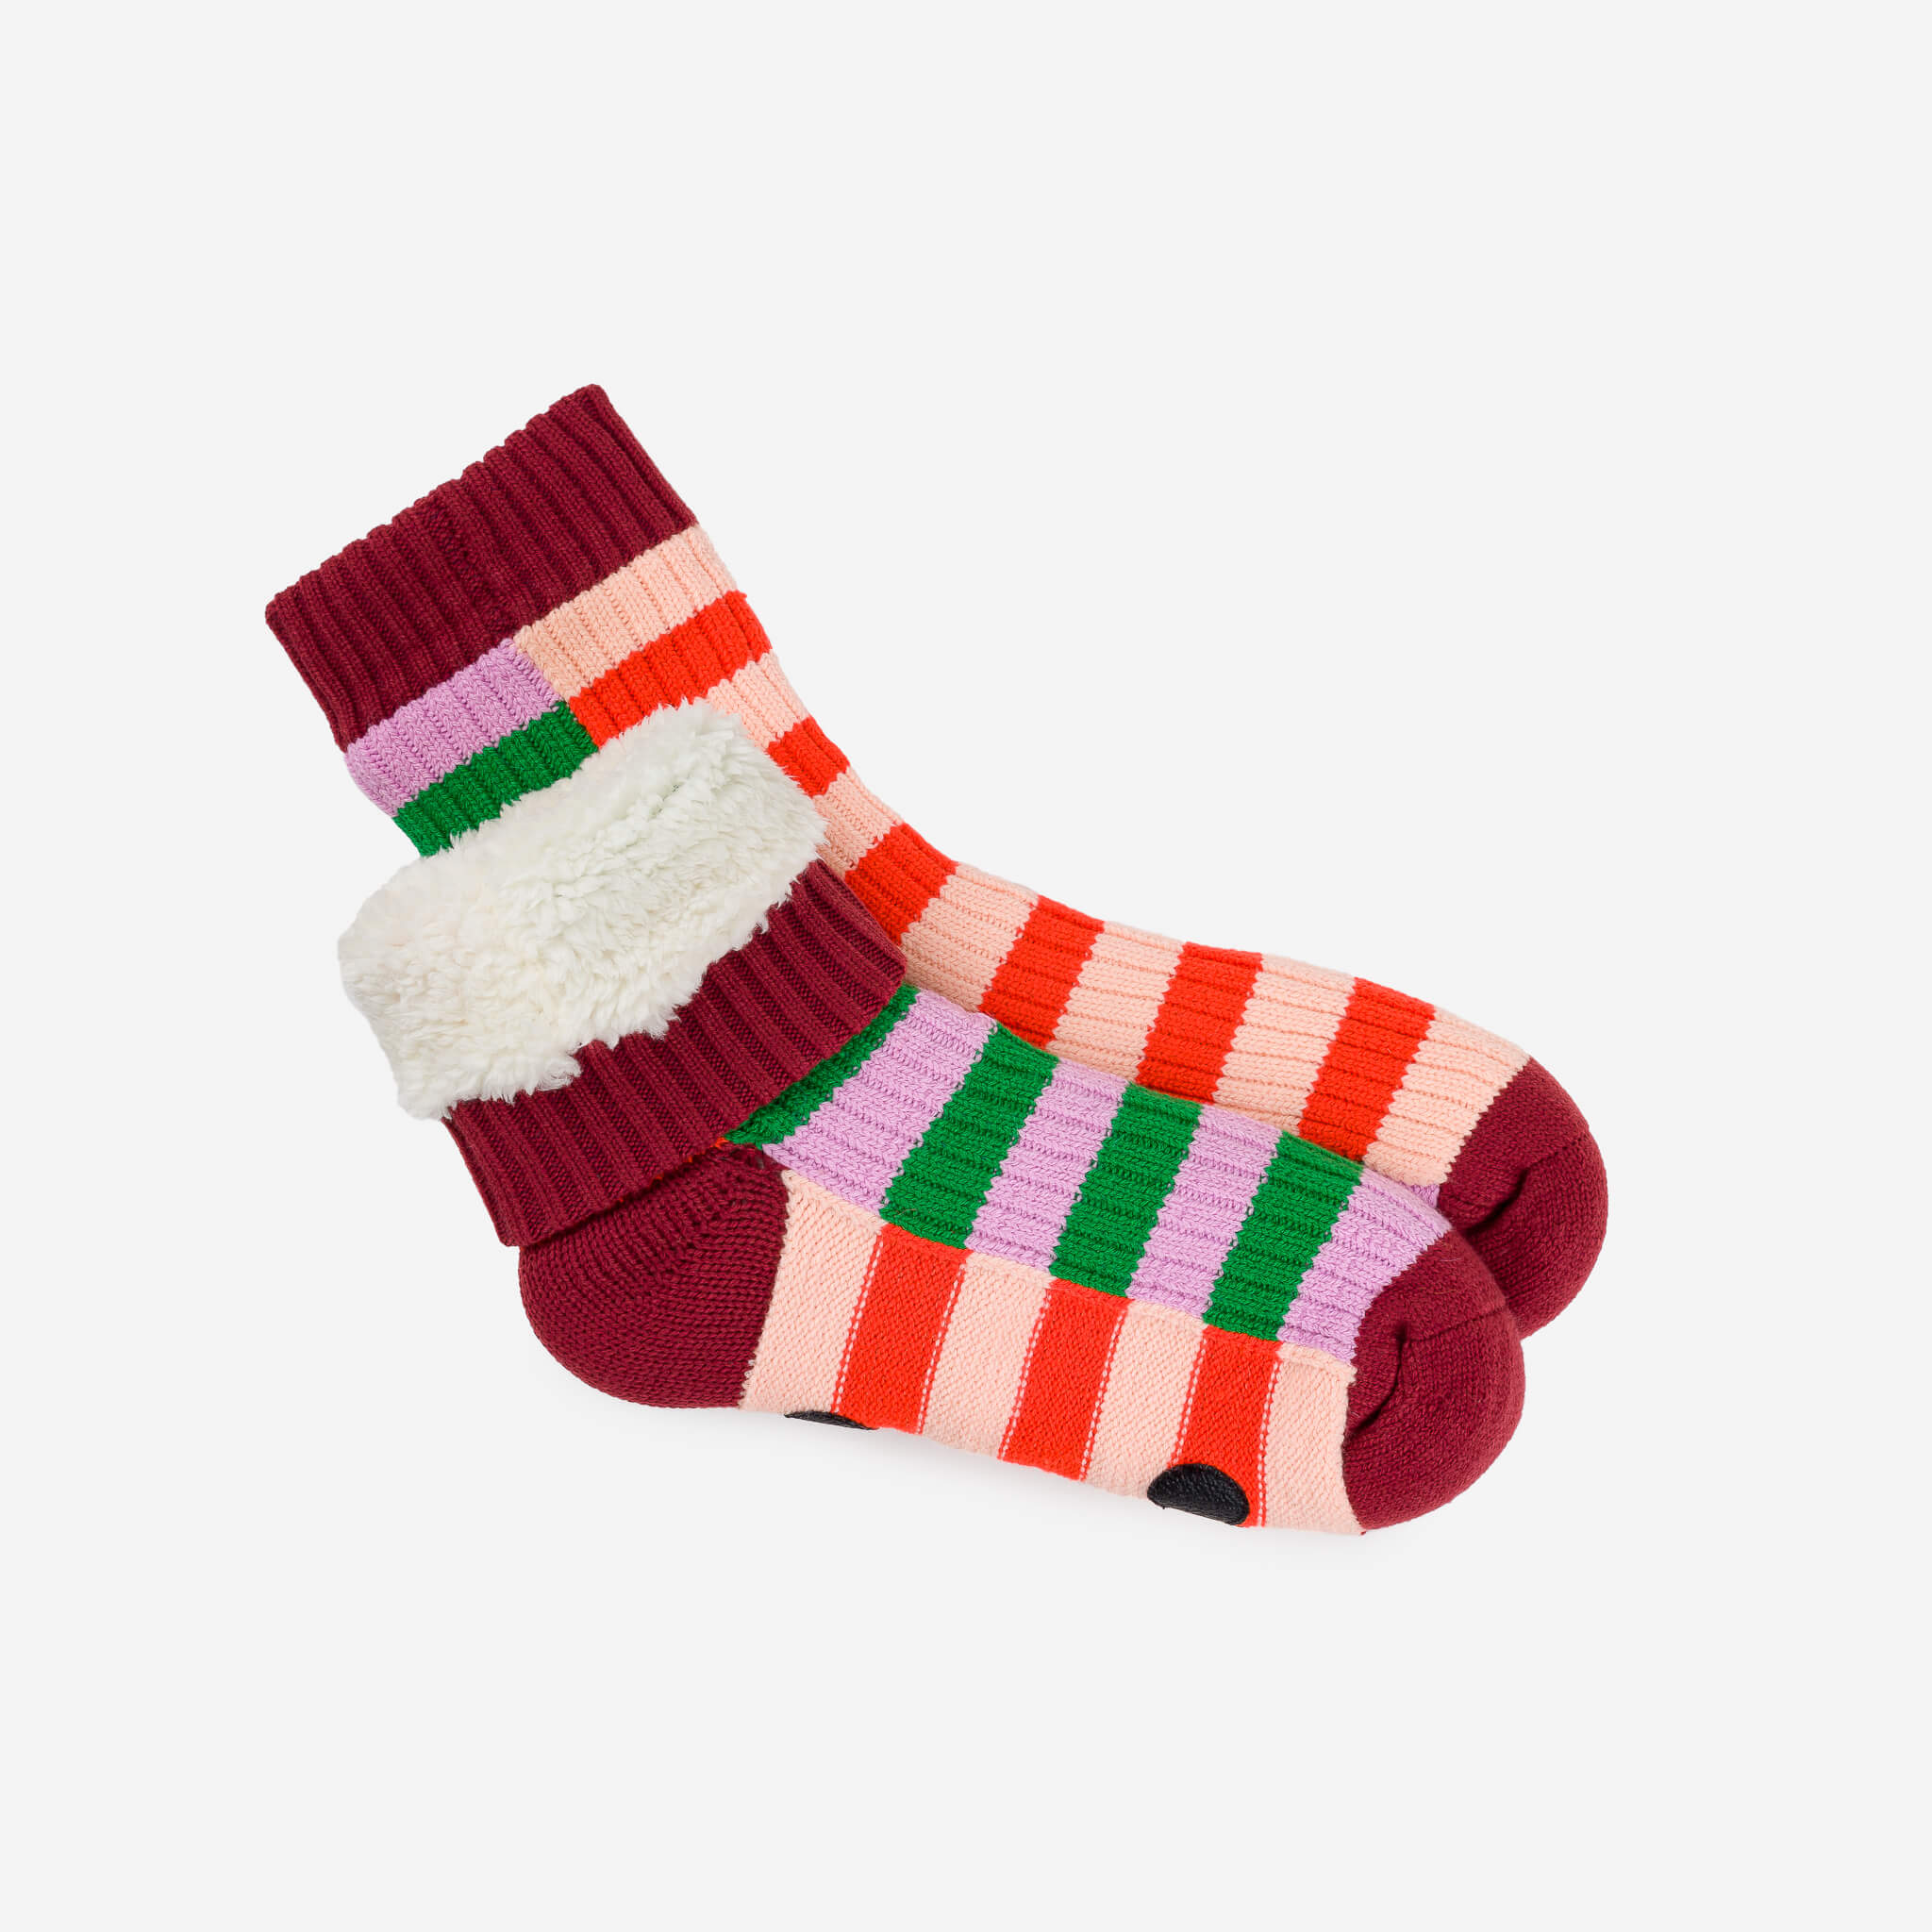 Red Stripe Socks: Cozy Kitchen Footwear